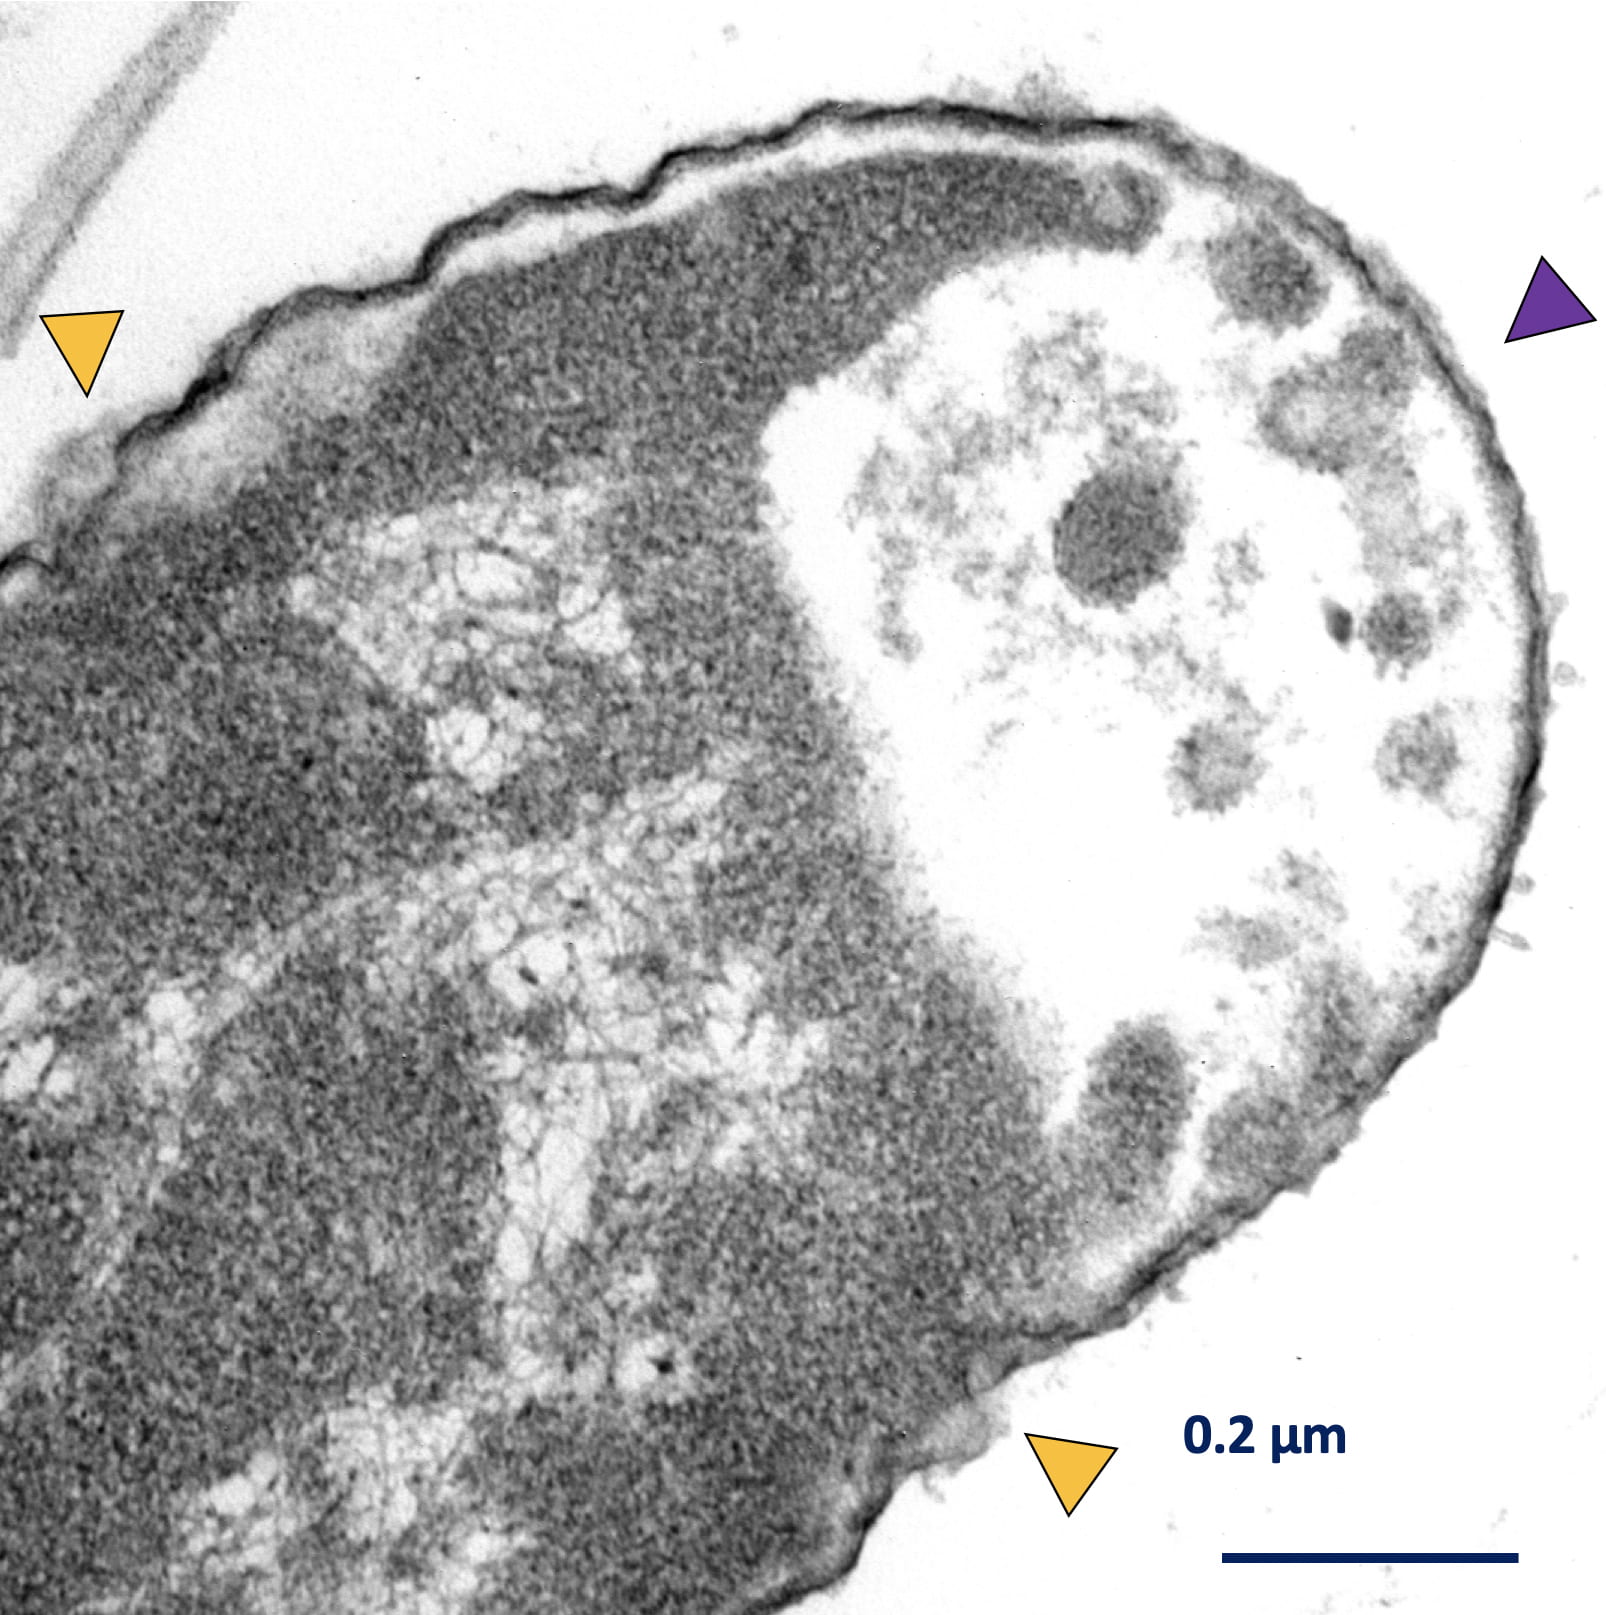 La bacteria Klebsiella pneumoniae después de la intervención combinada de máquinas moleculares y antibióticos. Las flechas amarillas muestran áreas de interrupciones de la pared celular, mientras que la flecha púrpura muestra dónde la bacteria ha perdido parte de su citoplasma. Imagen de Don Galbadage / Texas A&M.